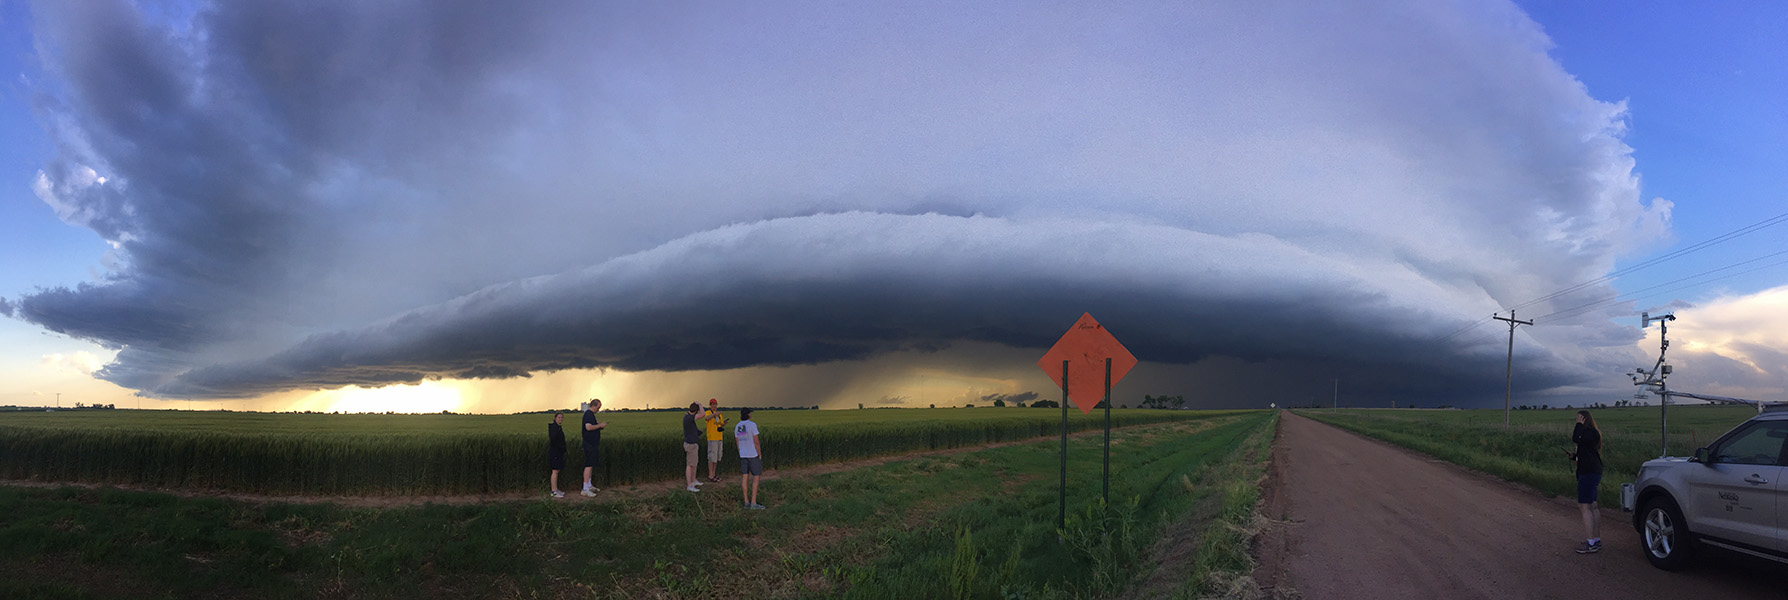 Cinco estudiantes universitarios de pie en el borde de un maizal observando una gigantesca nube de tormenta baja. 